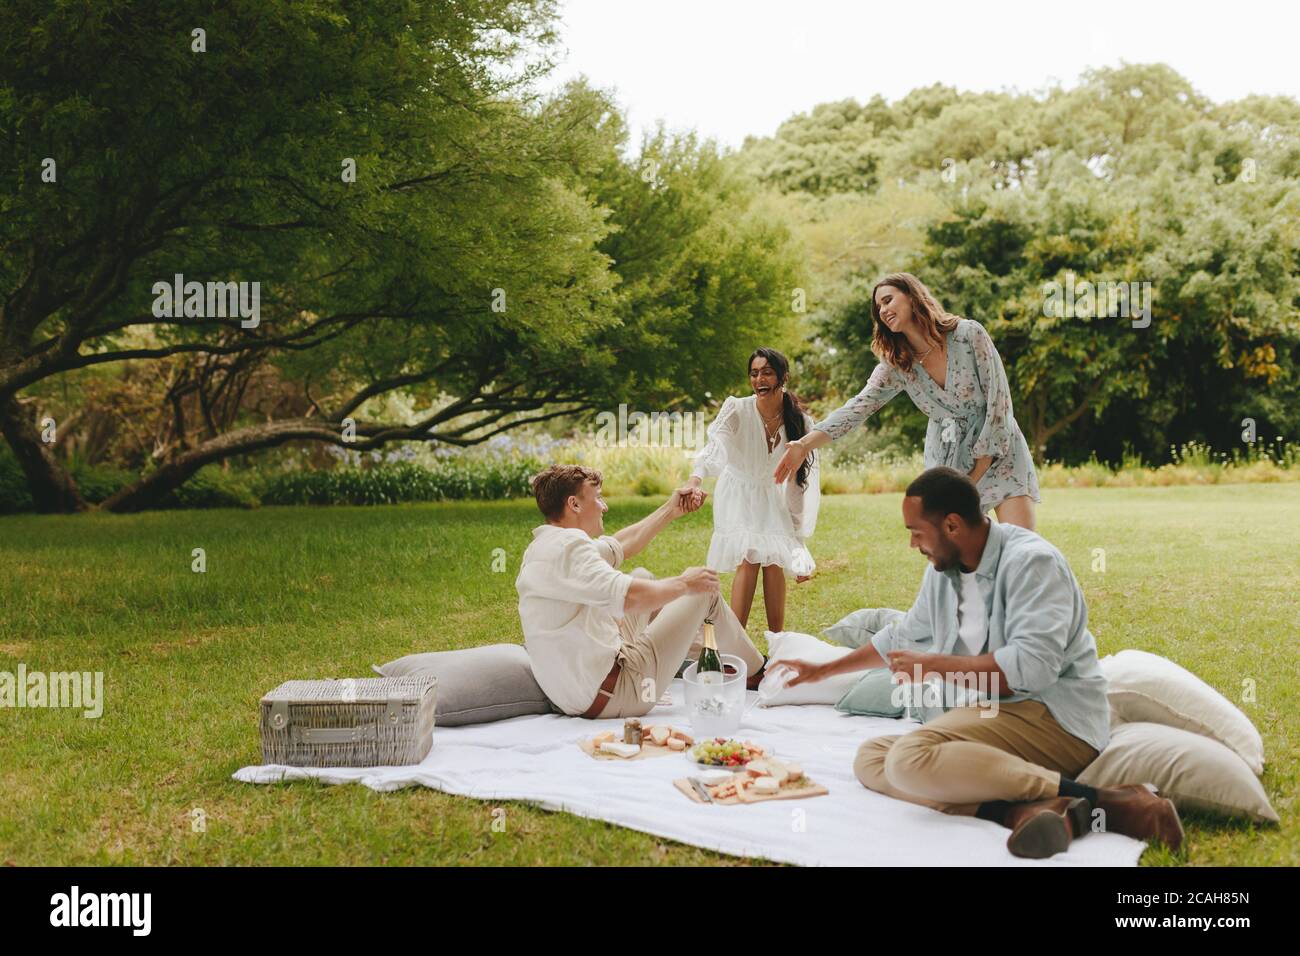 Eine Gruppe von Freunden, die im Park picknicken. Multiethnische Gruppe von jungen Menschen im Park mit Picknick. Stockfoto